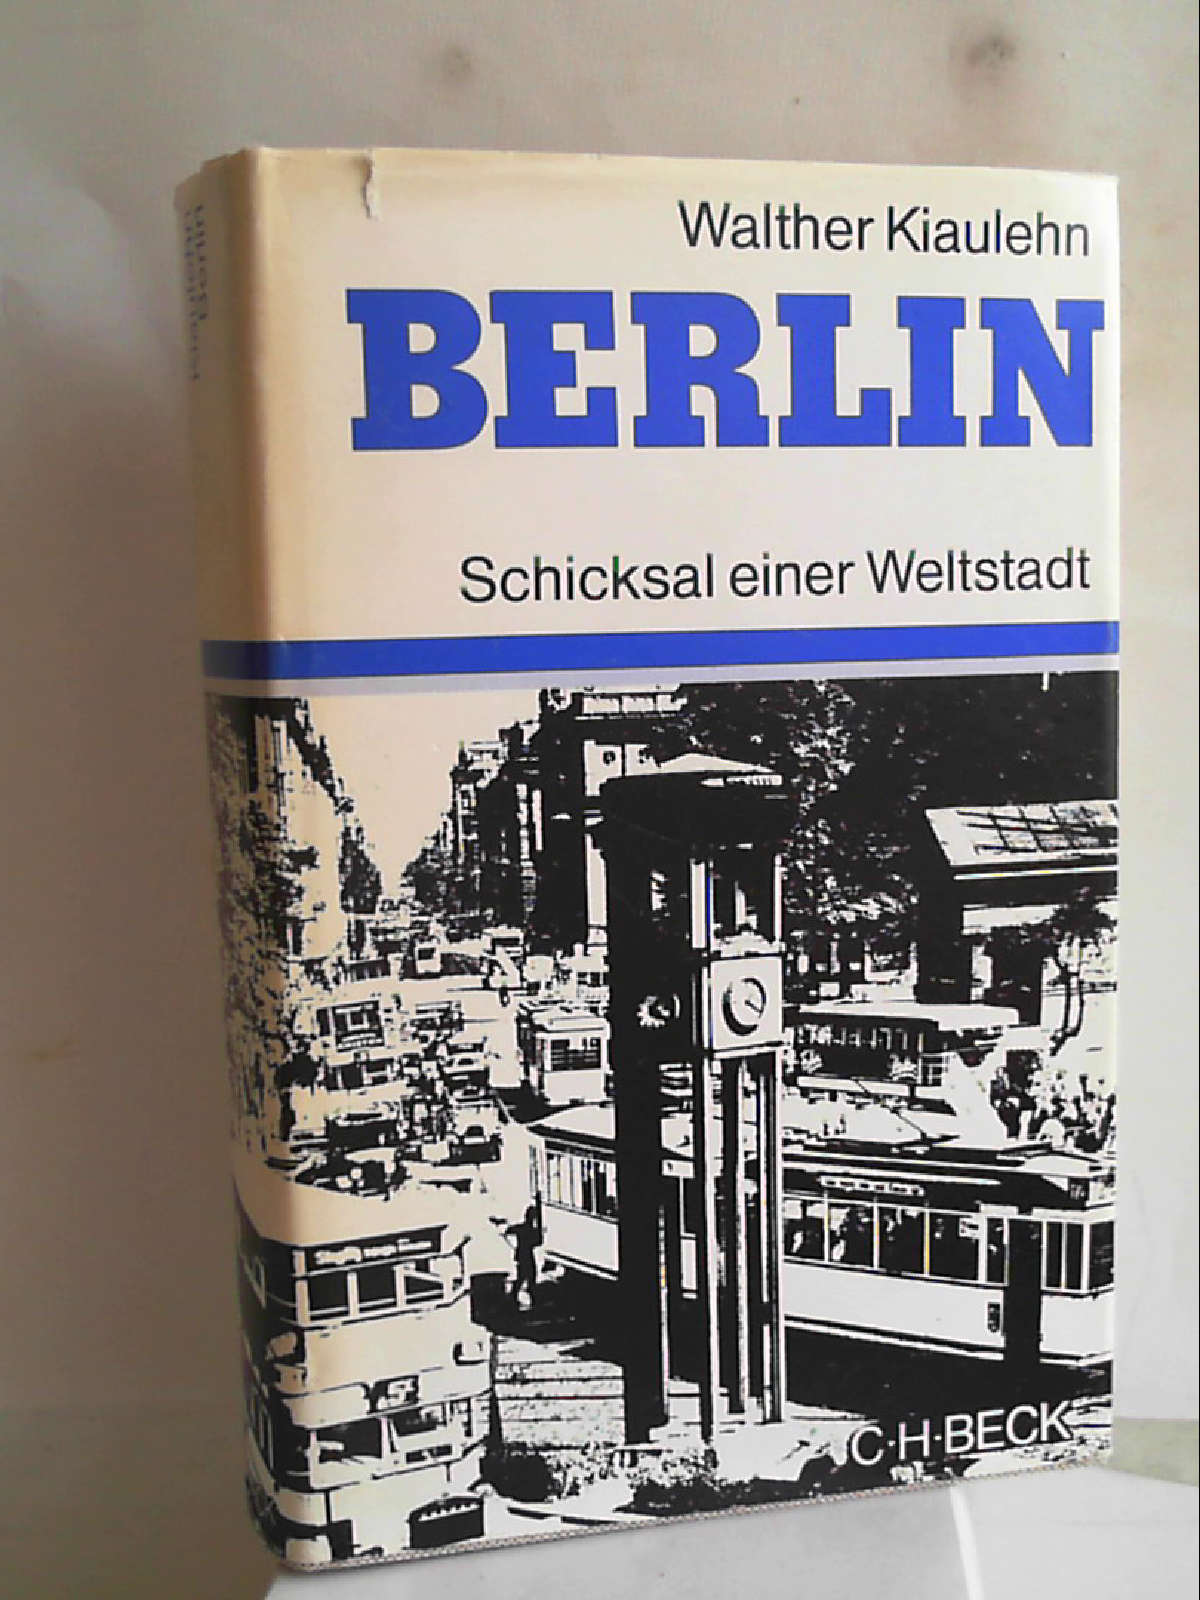 Berlin. Schicksal einer Weltstadt [Hardcover] Walther Kiaulehn - Walther Kiaulehn